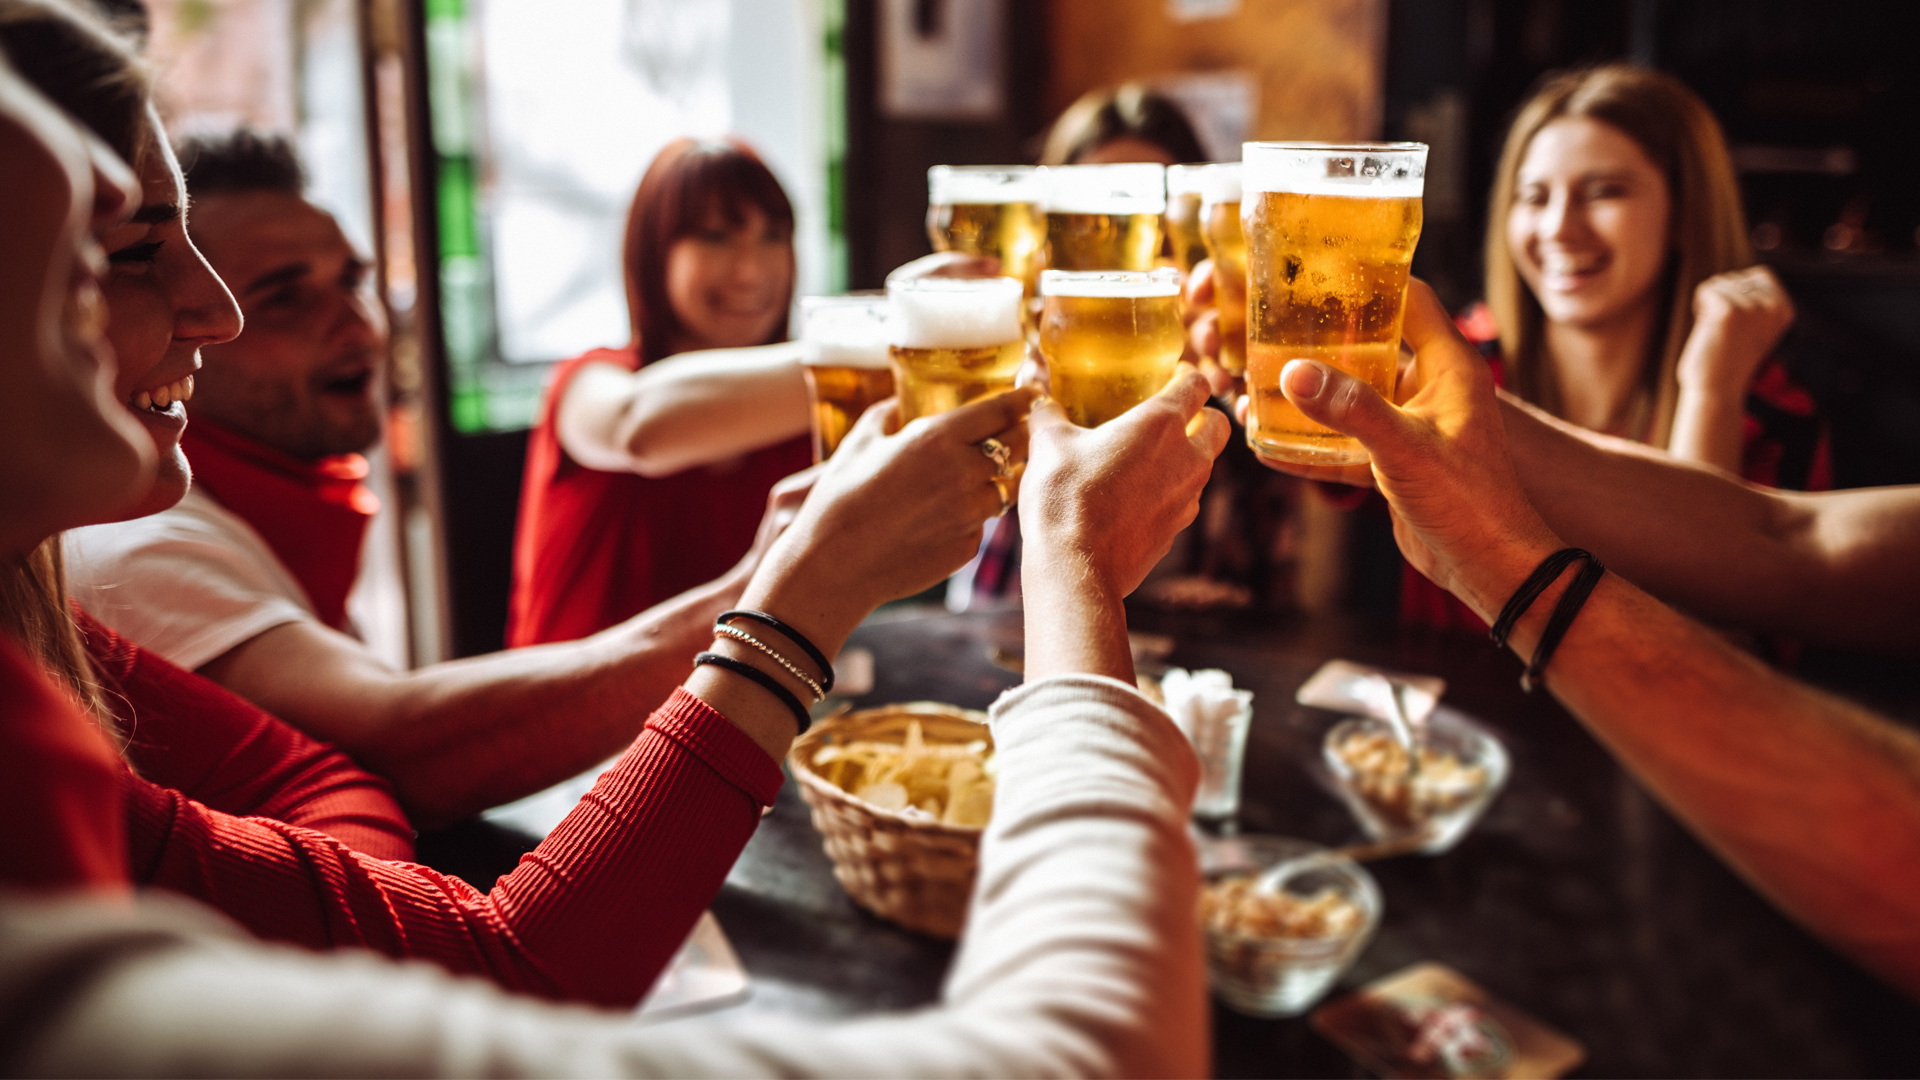 Beer lovers with coeliac disease have great gluten-free beers in Australia